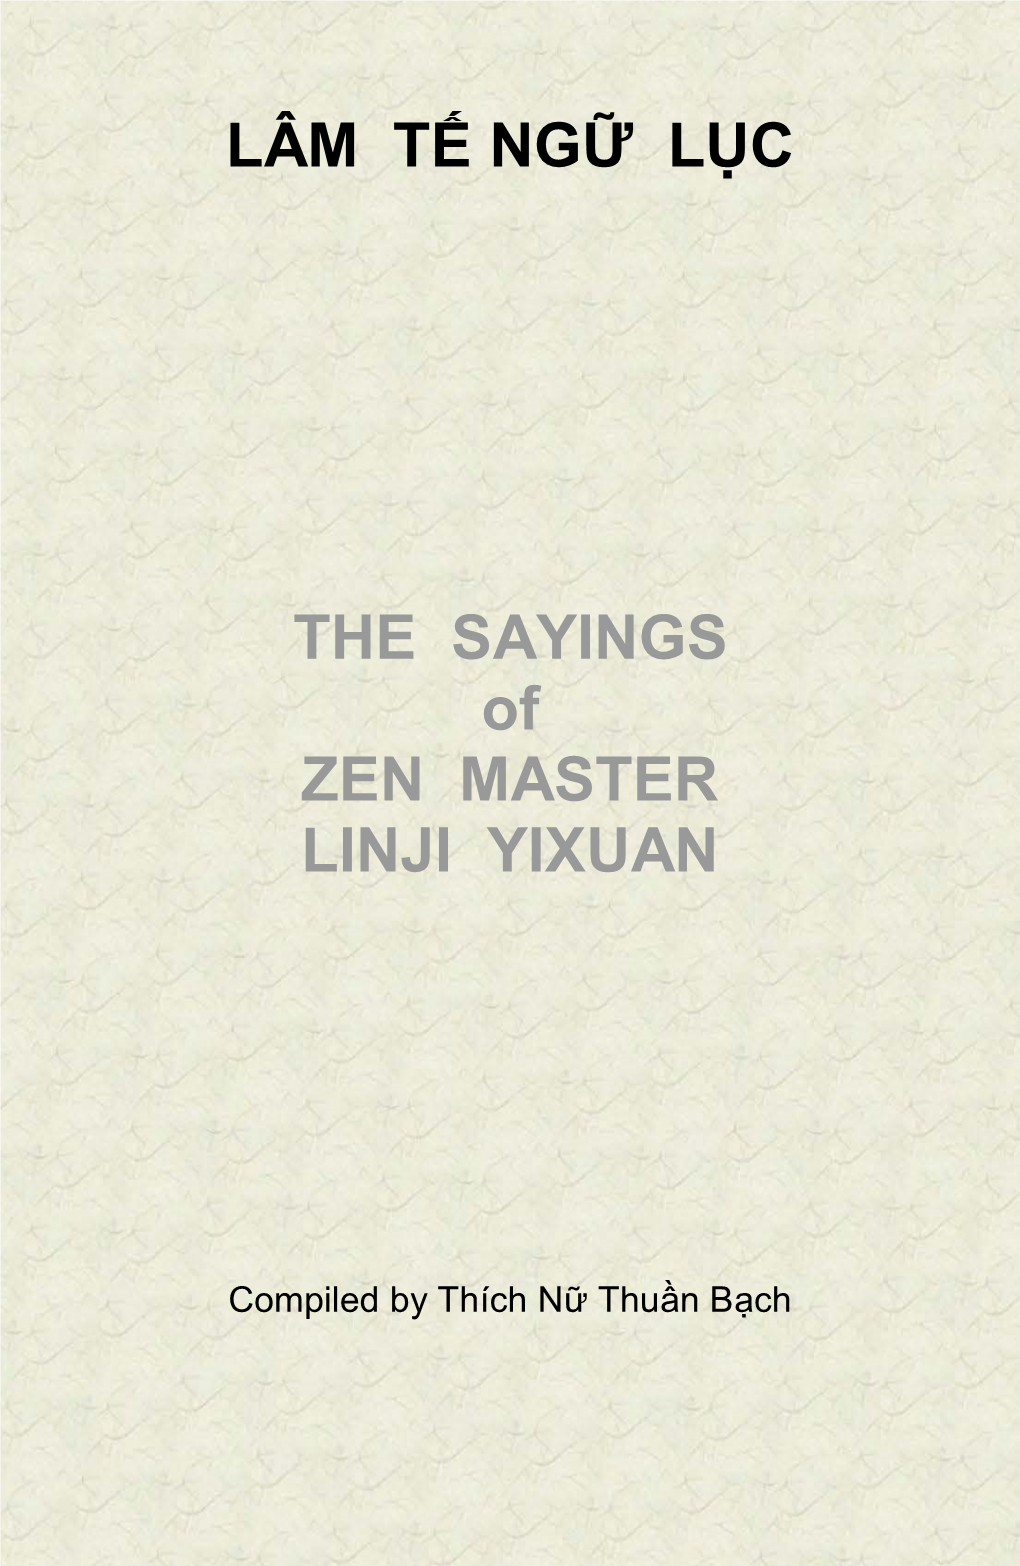 LÂM TẾ NGỮ LỤC the SAYINGS of ZEN MASTER LINJI YIXUAN